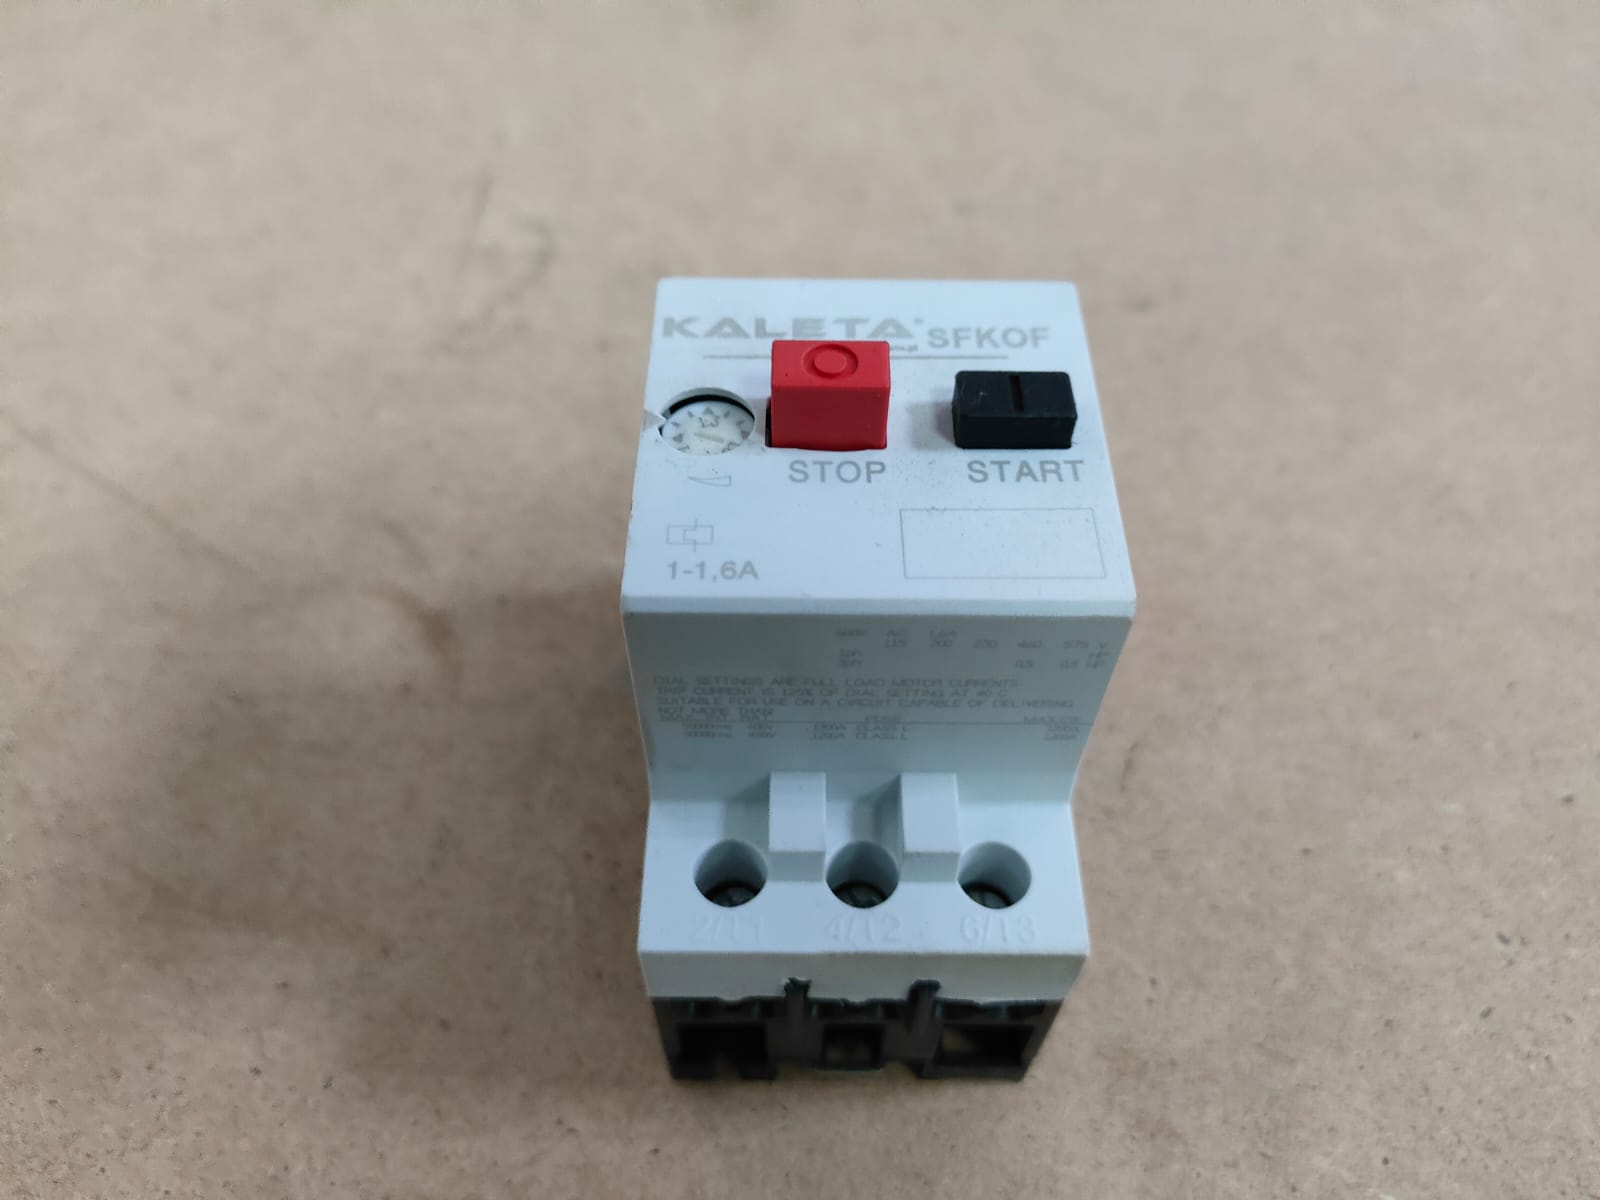 Термический выключатель М250 1-1,6А ВЛГ